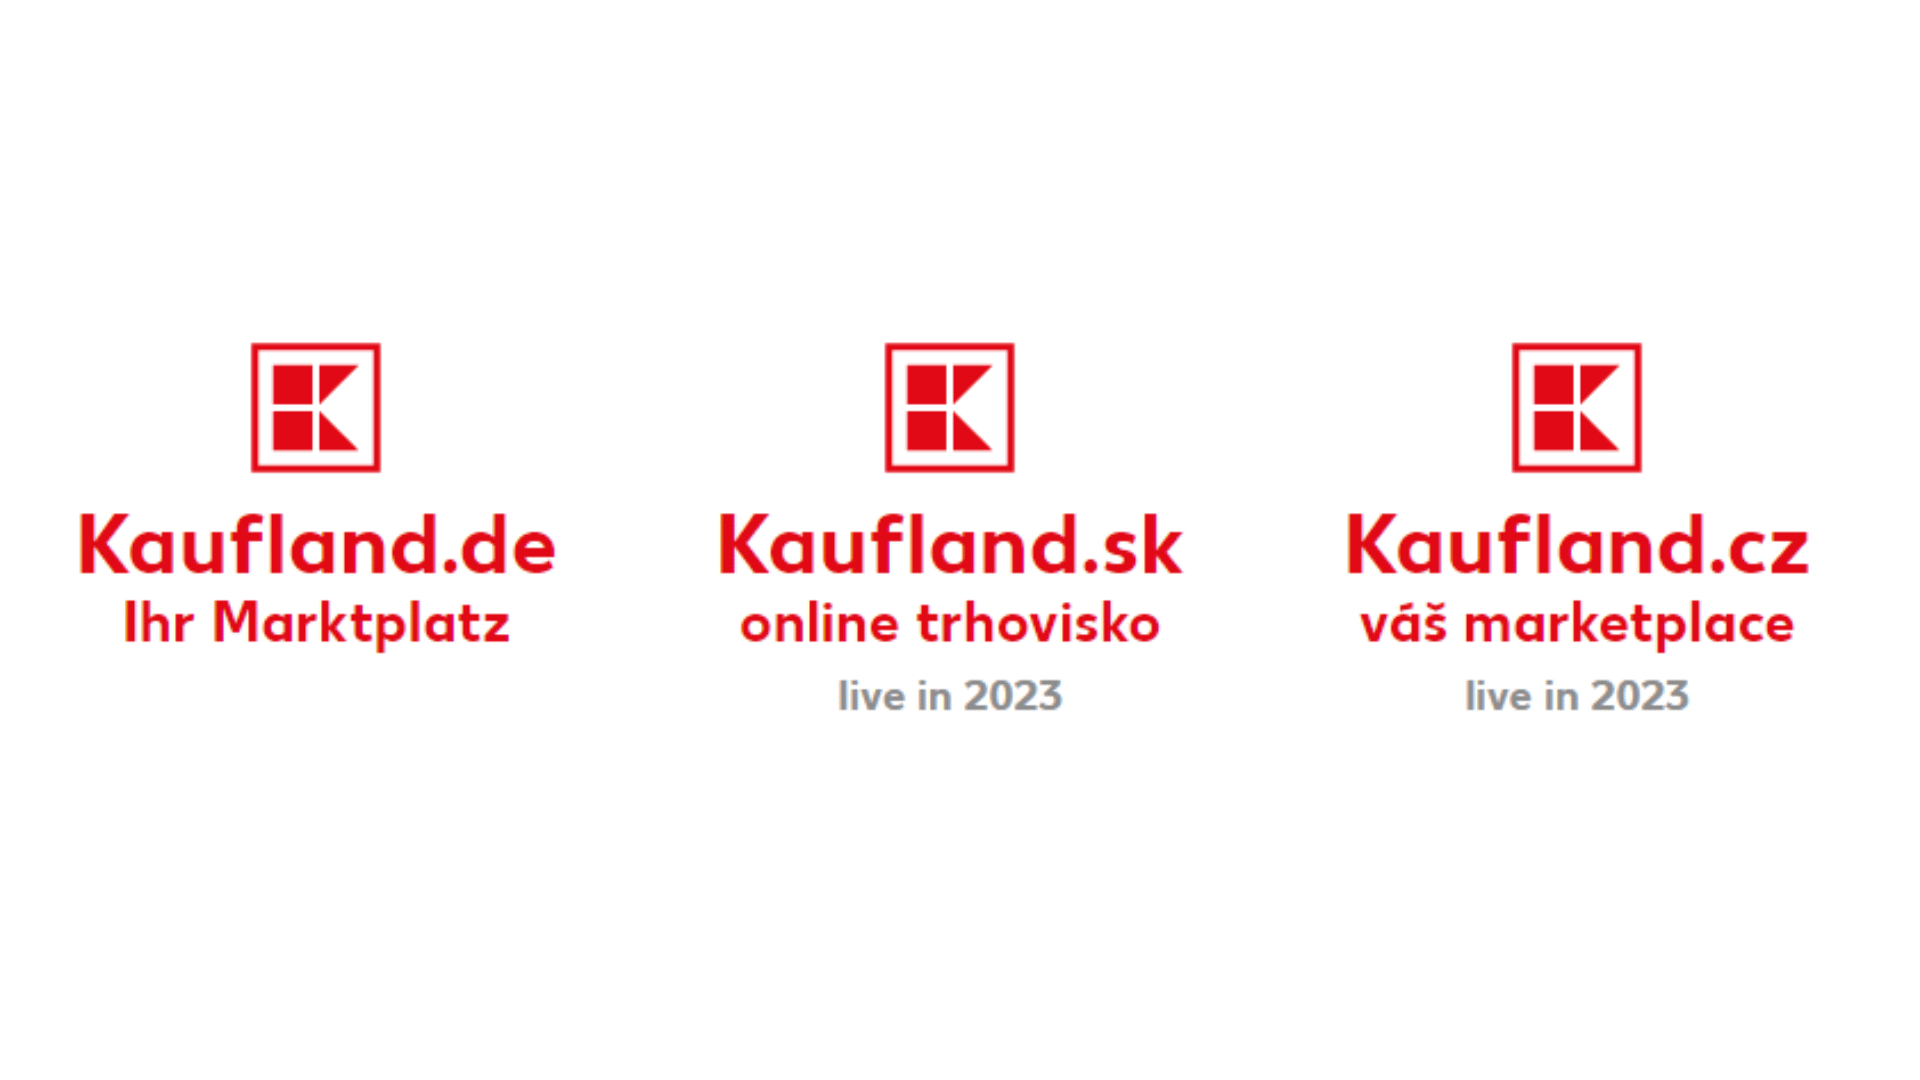 Kaufland markets